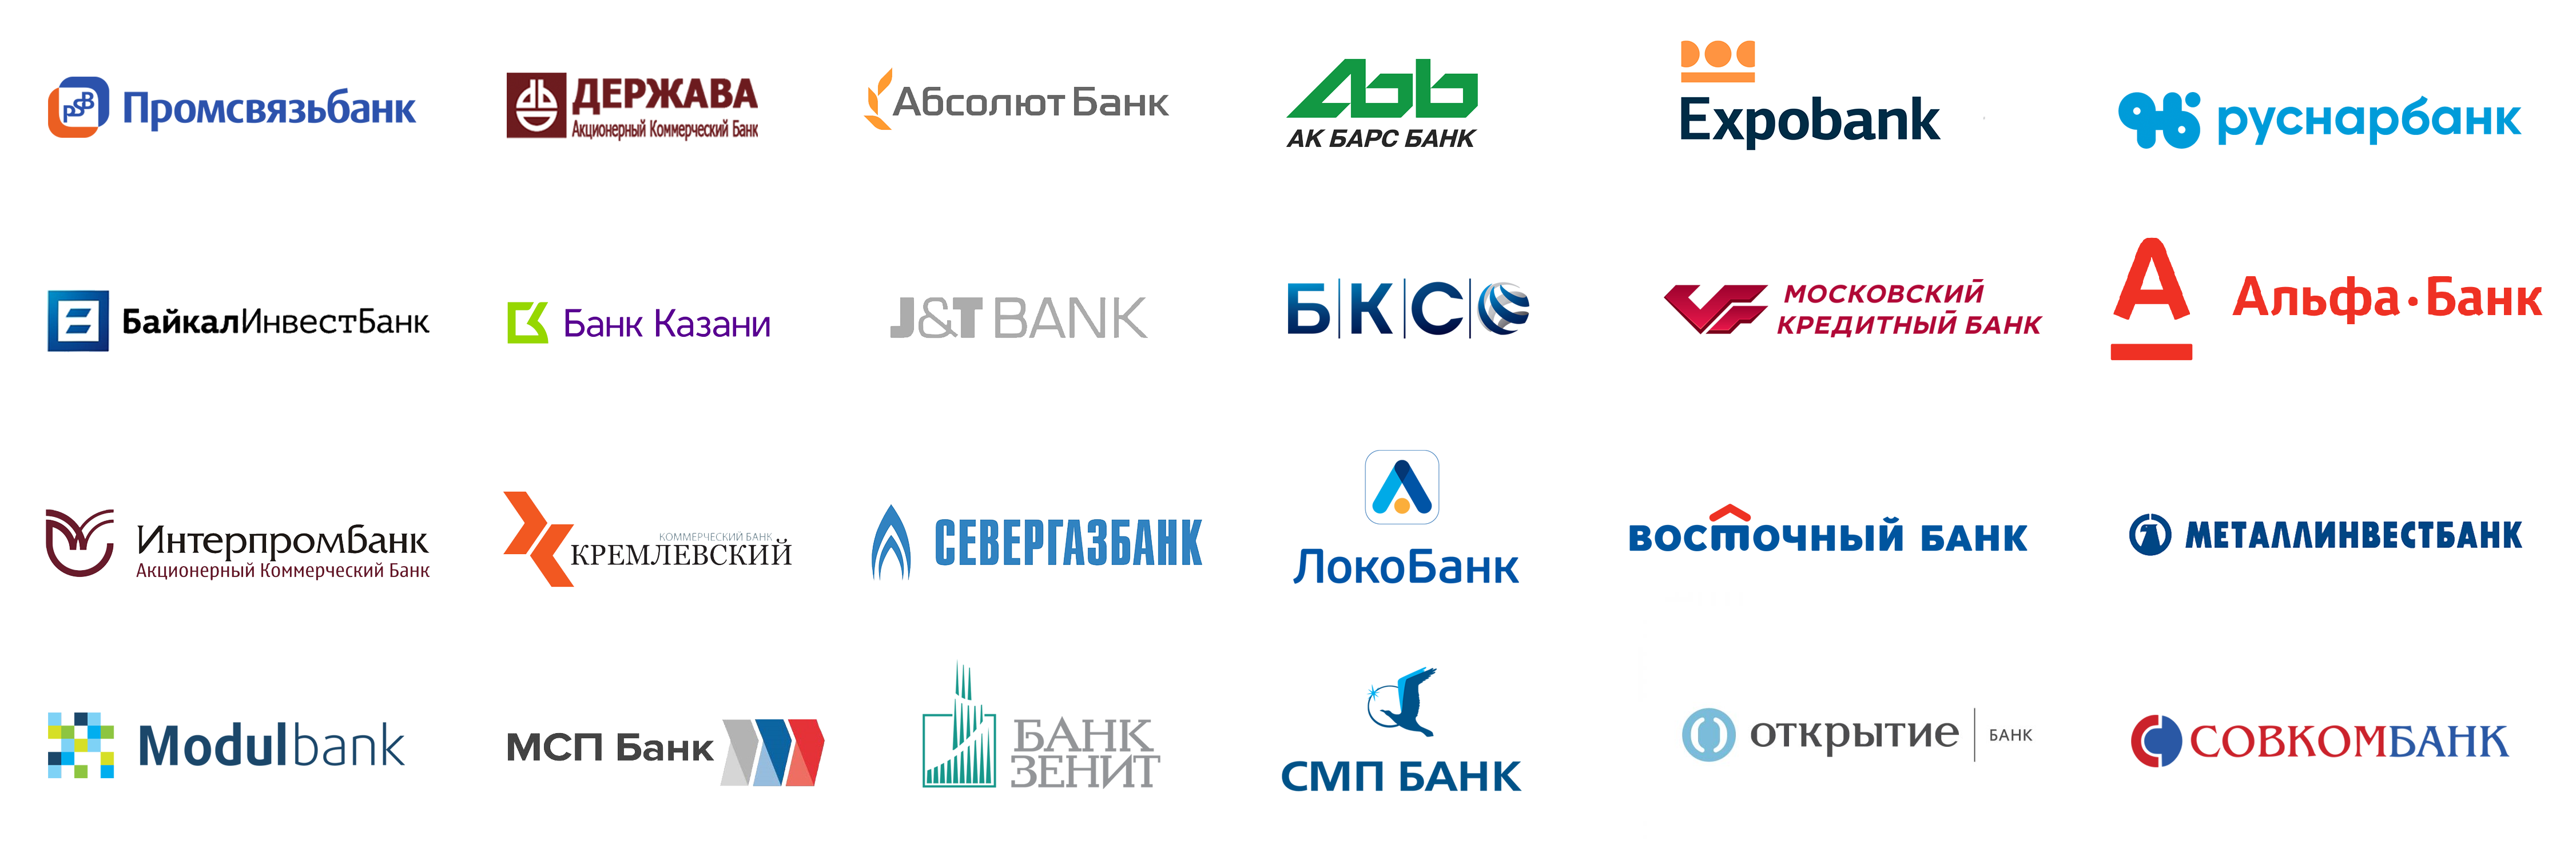 Логотипы банков. Банки партнеры. Логотипы российских банков. Банк России логотип.